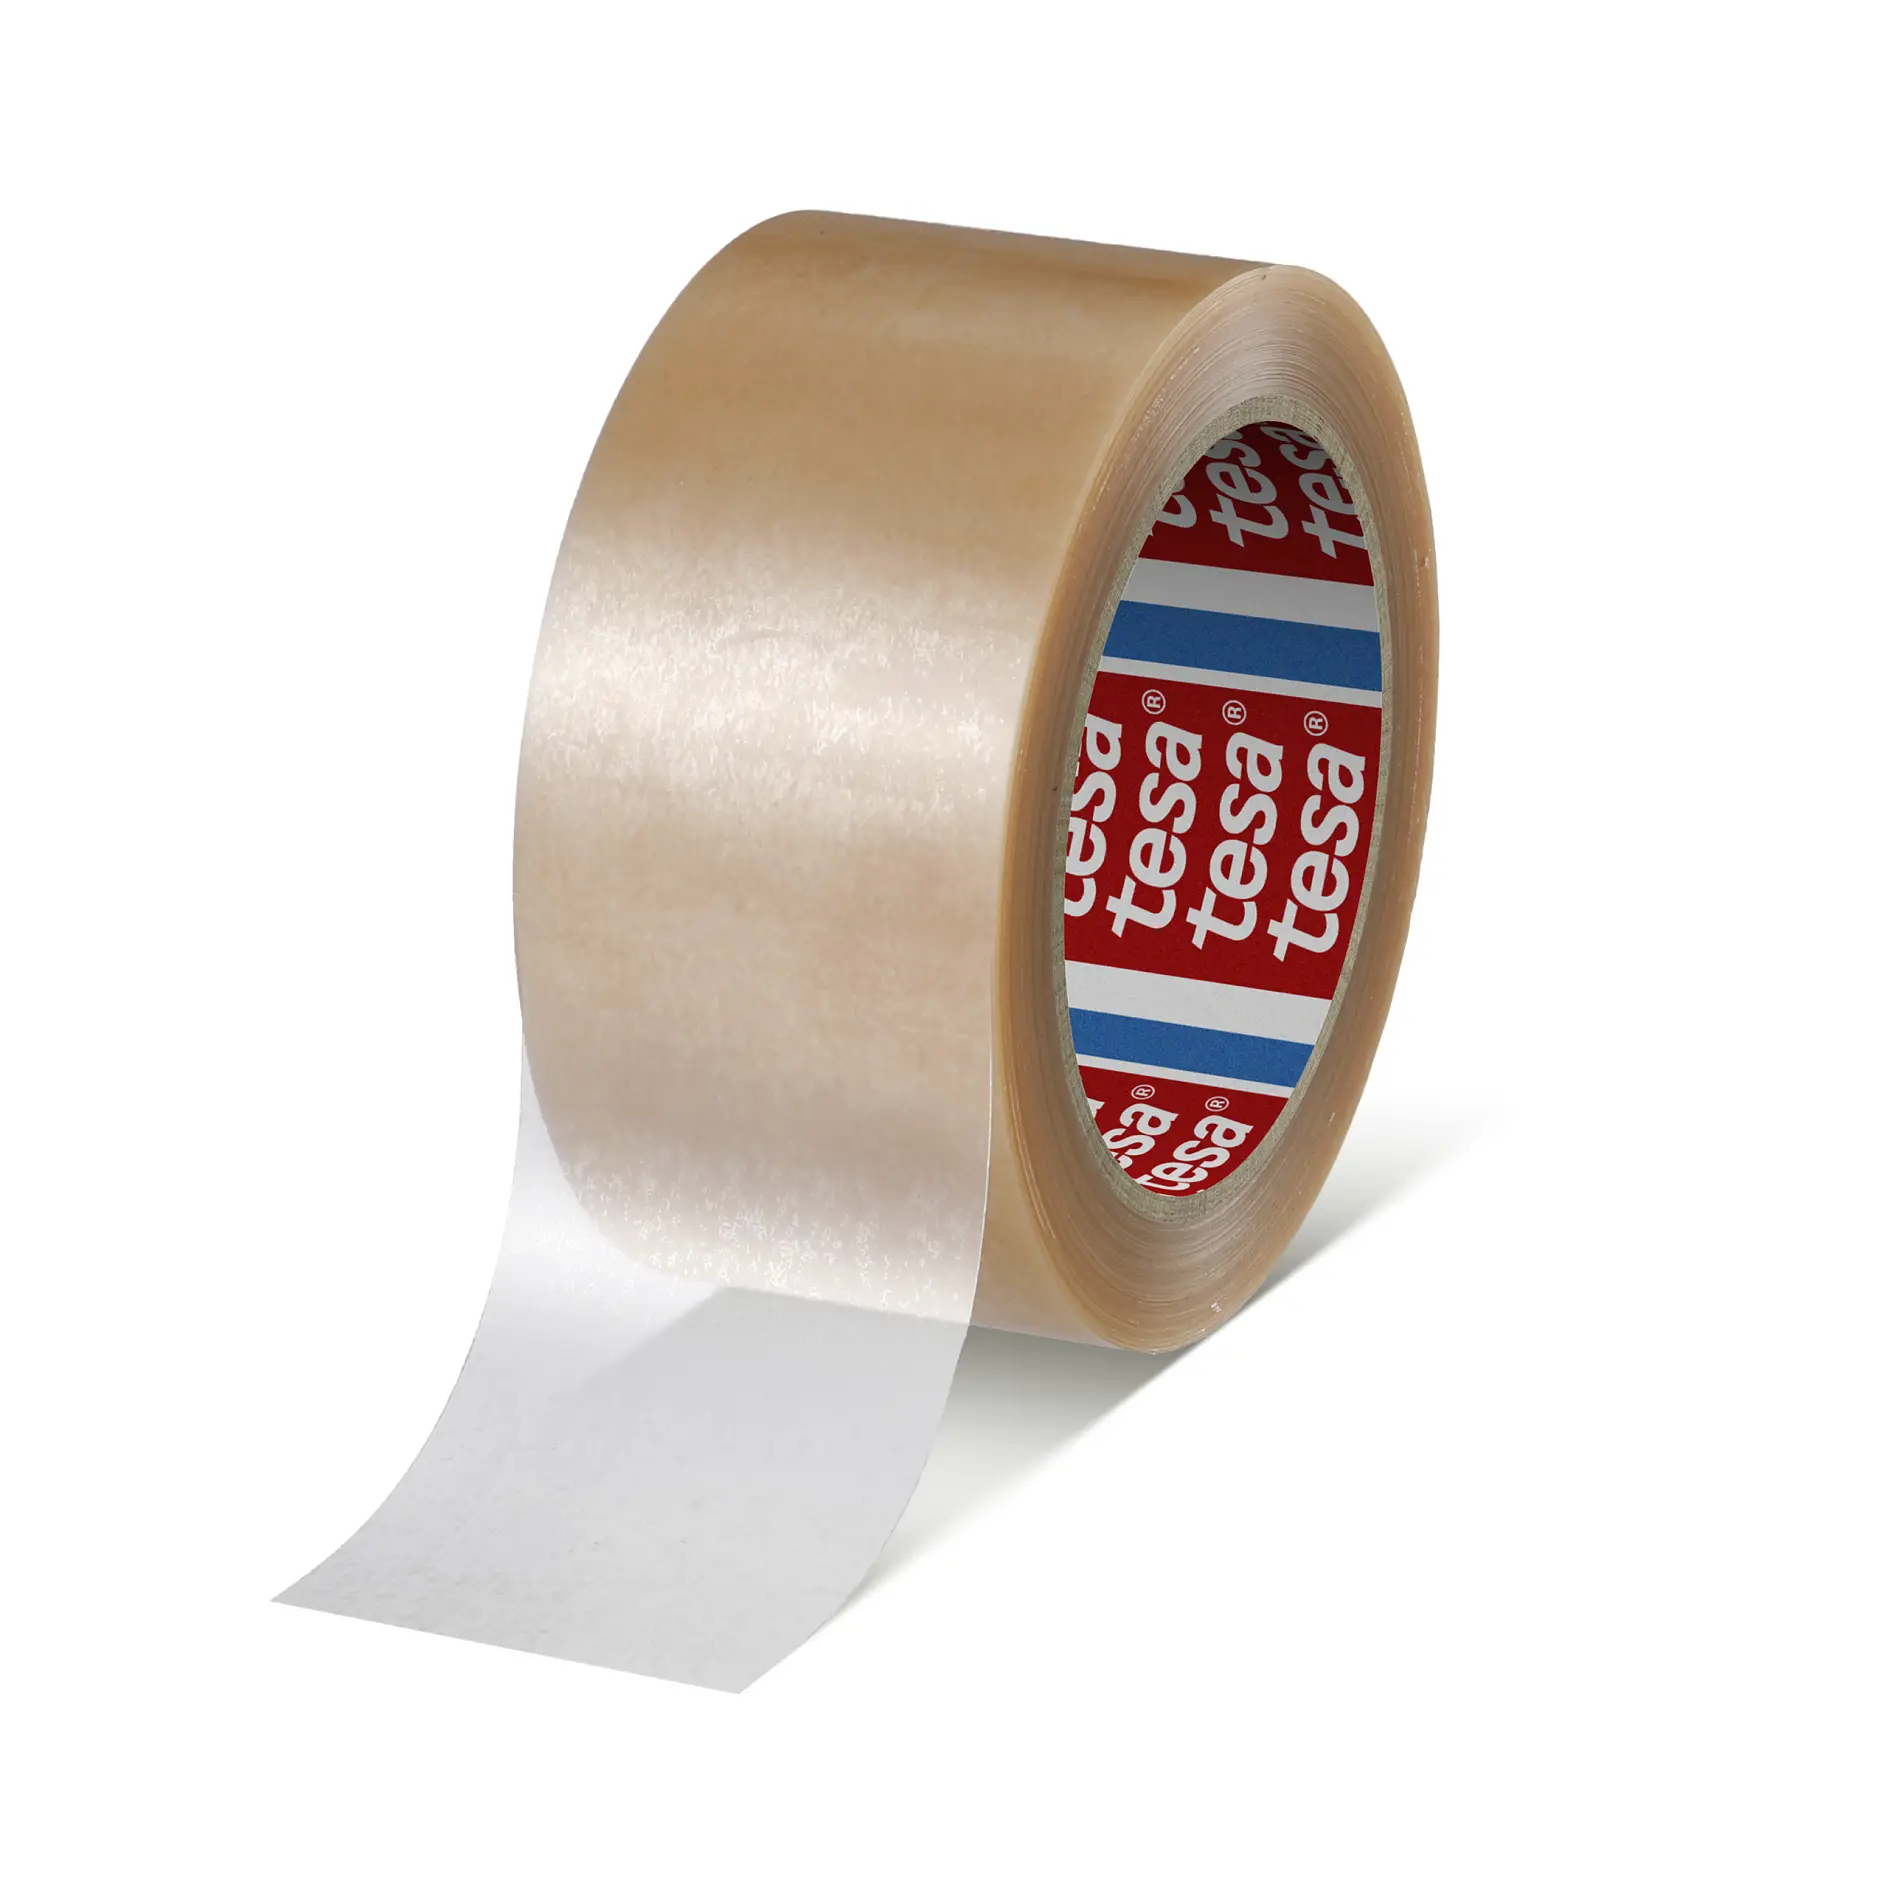 tesa-4104-packaging-adhesive-film-to-seal-boxes-transparent-041040002300-pr